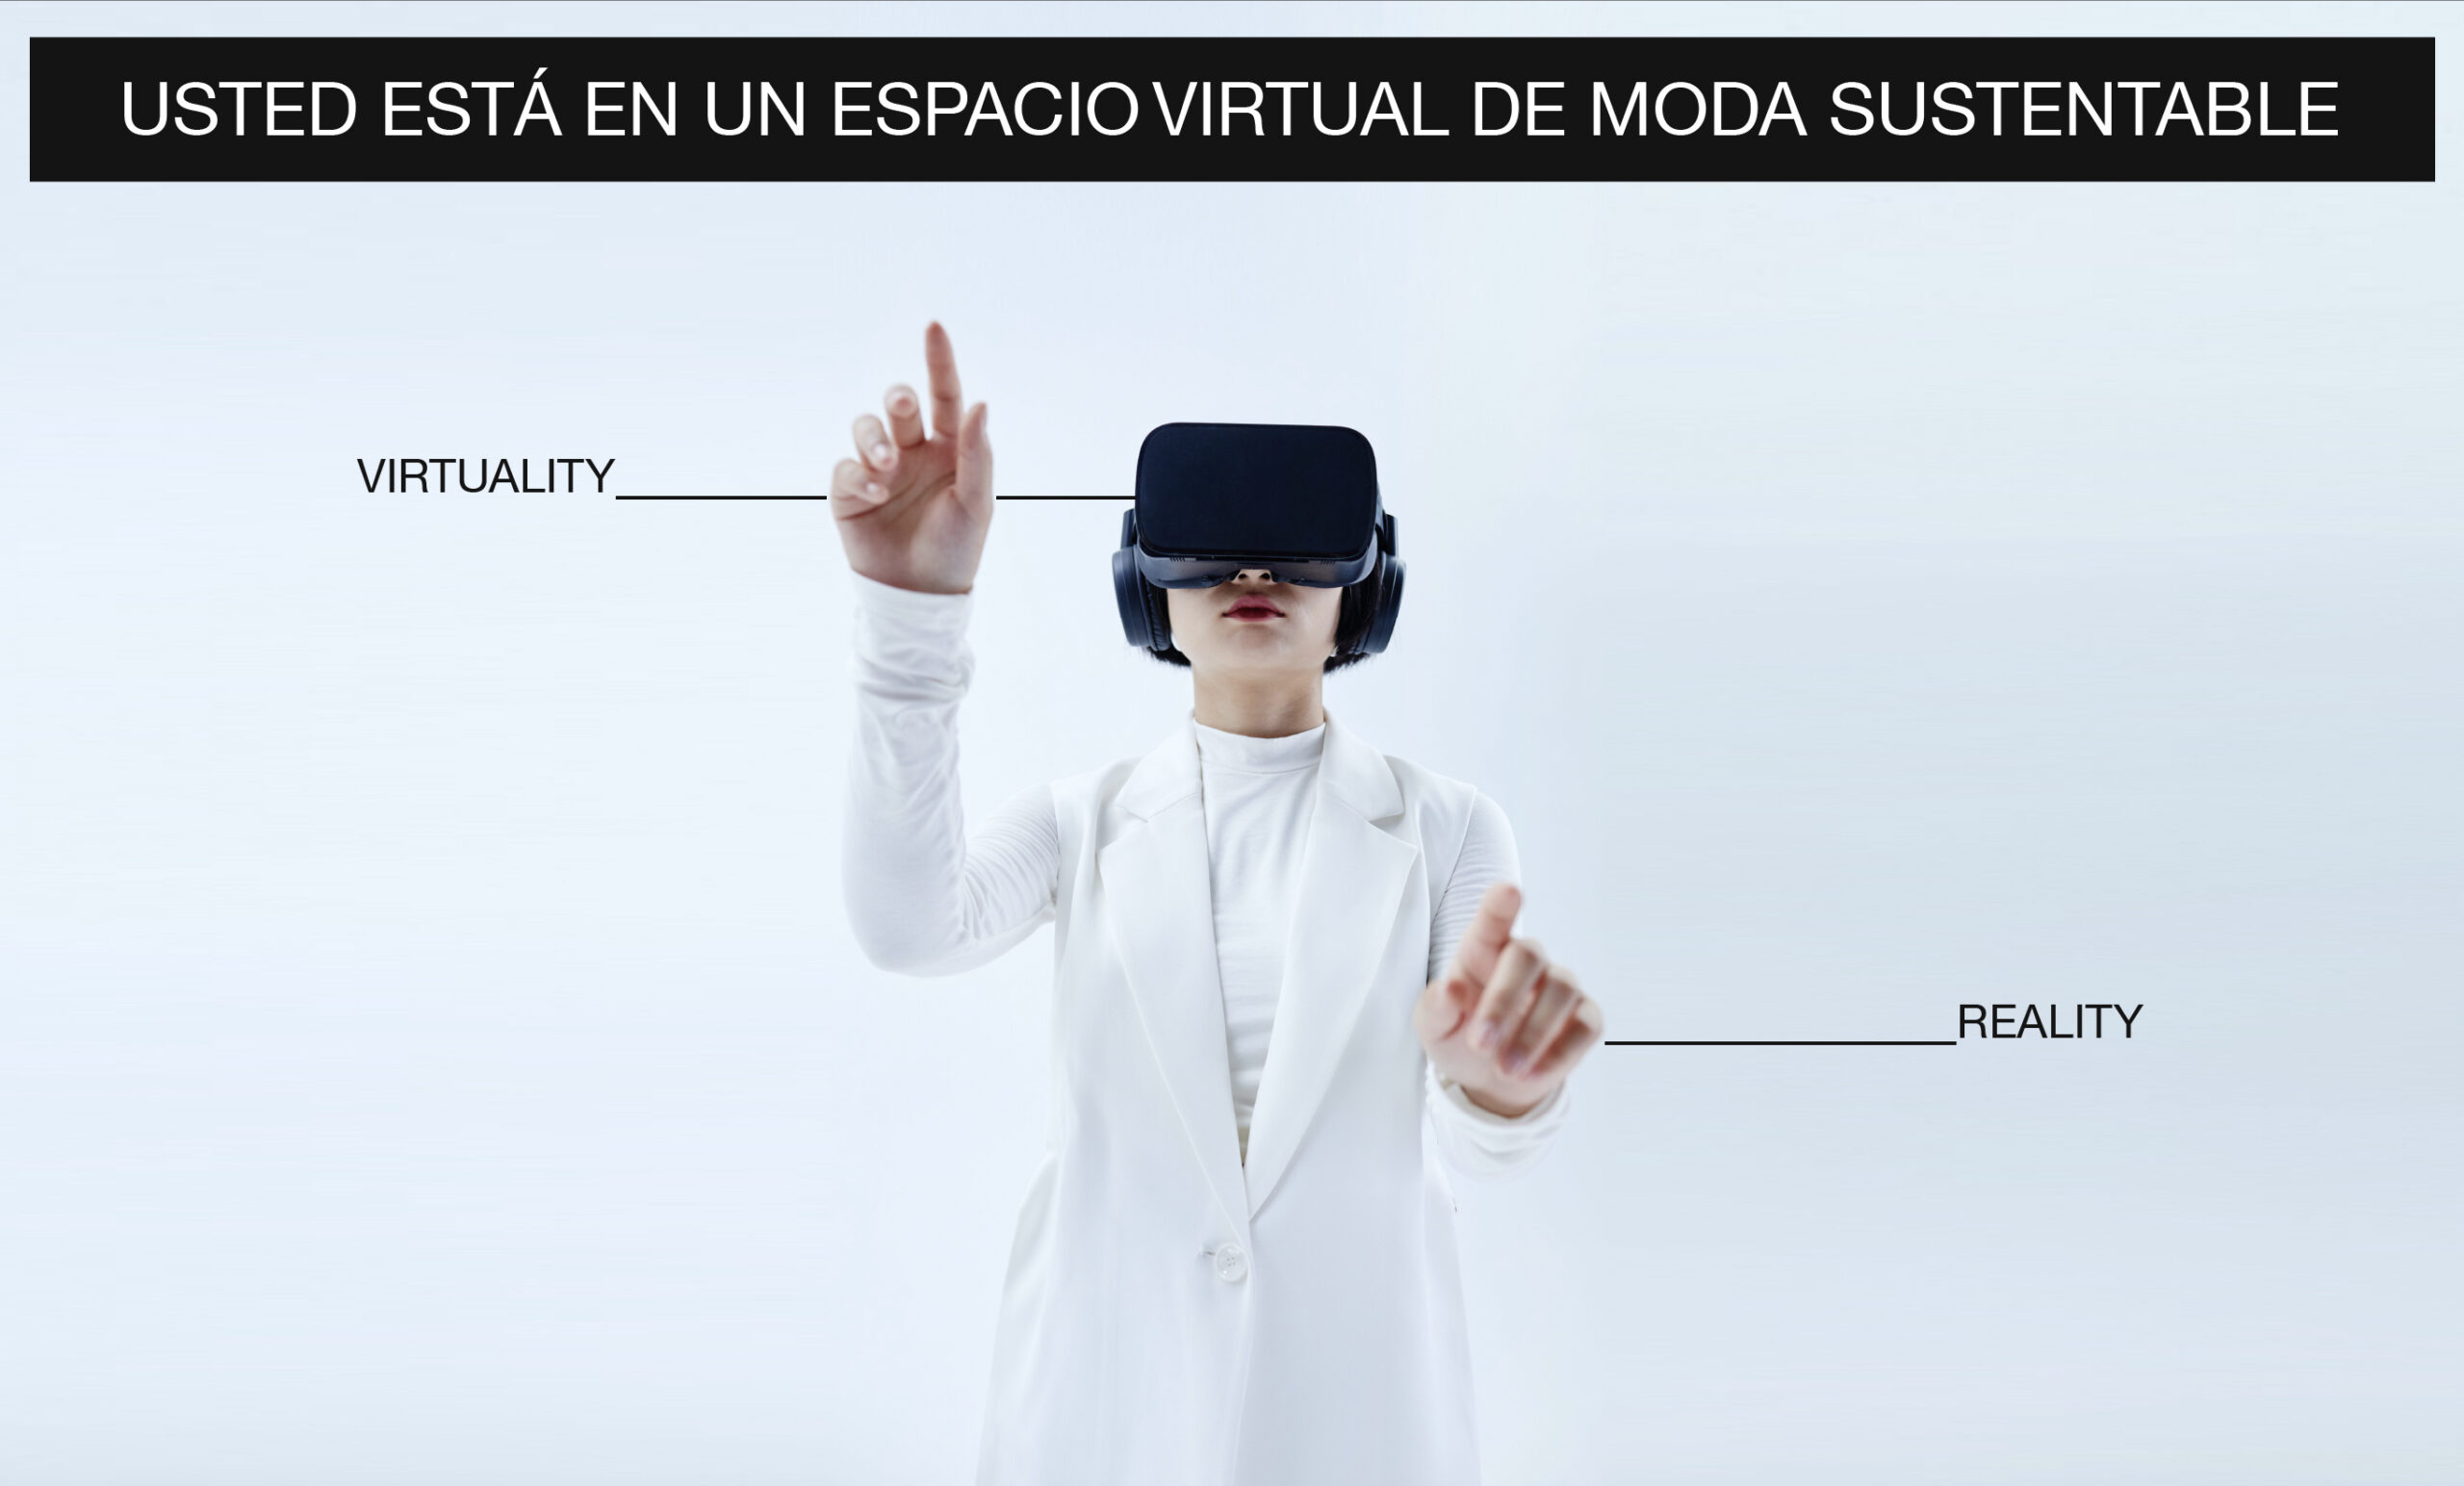 Mujer usando gafas de realidad virtual. Ella viste un saco blanco. Se encuentra interactuando con sus manos en la realidad virtual.